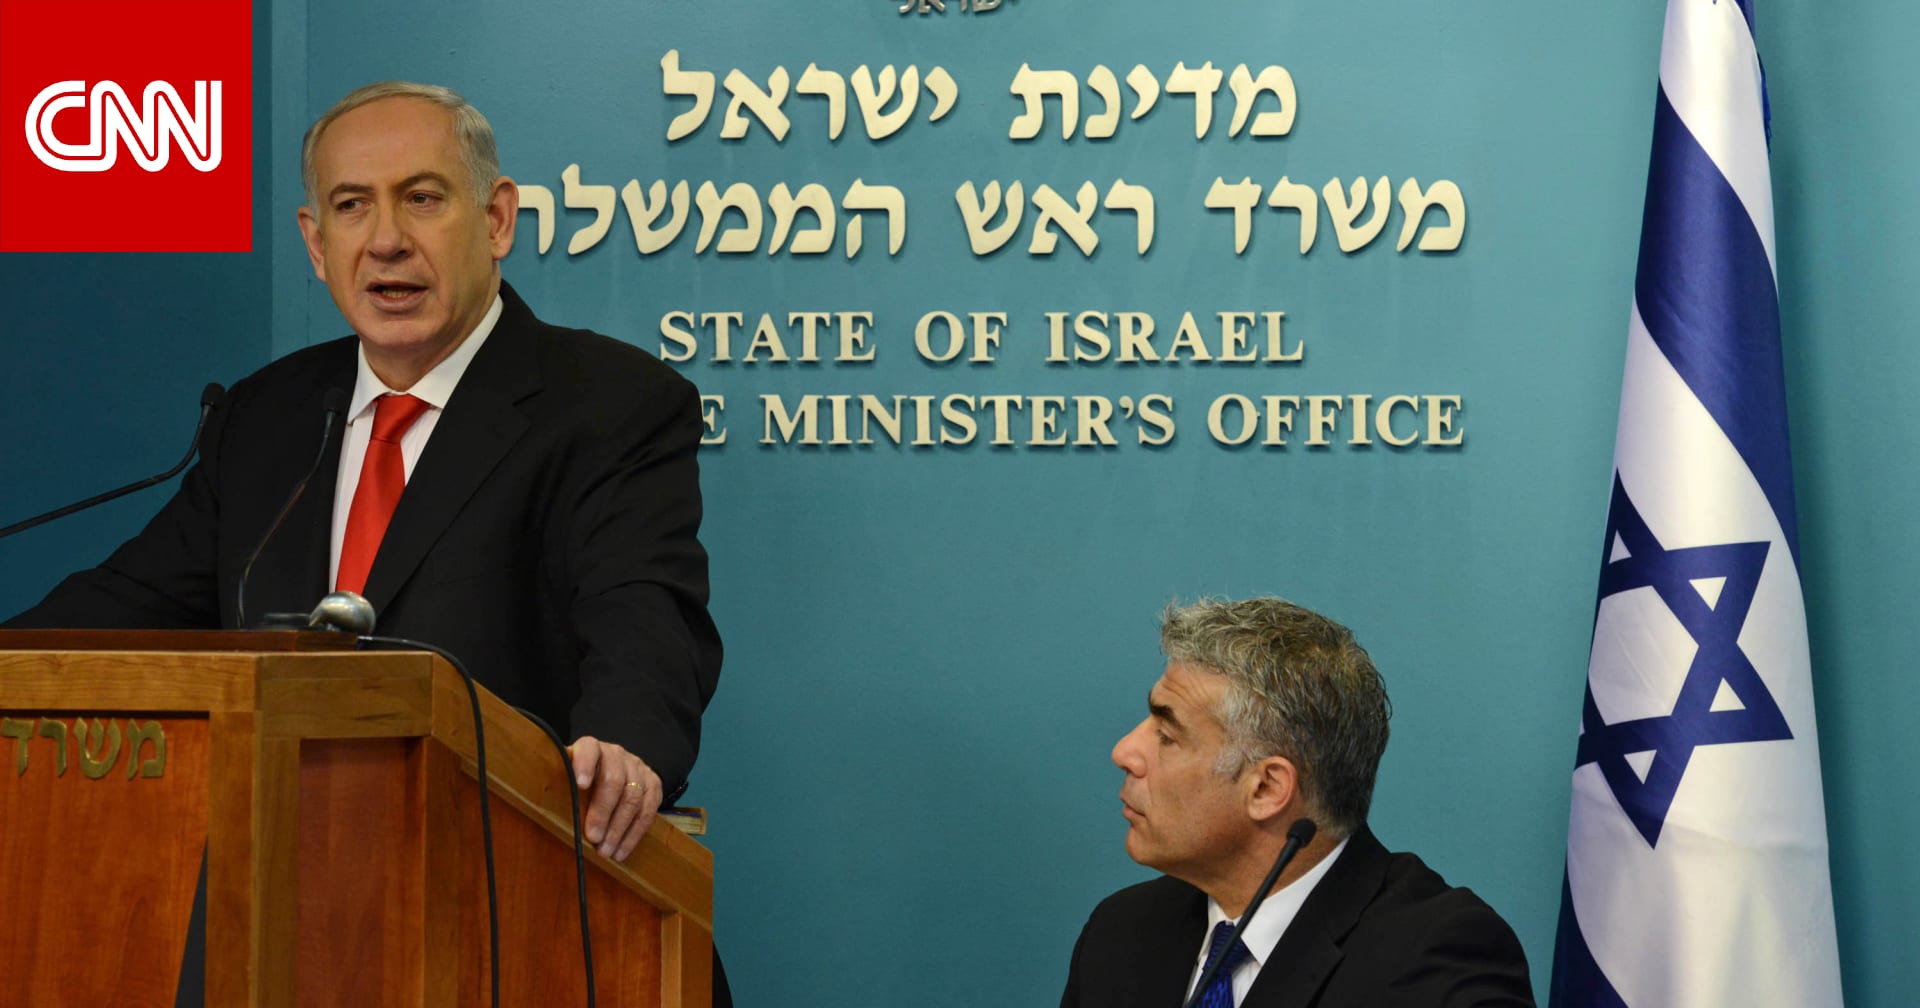 لأول مرة منذ هجوم "حماس".. زعيم المعارضة الإسرائيلية يدعو نتنياهو إلى الاستقالة